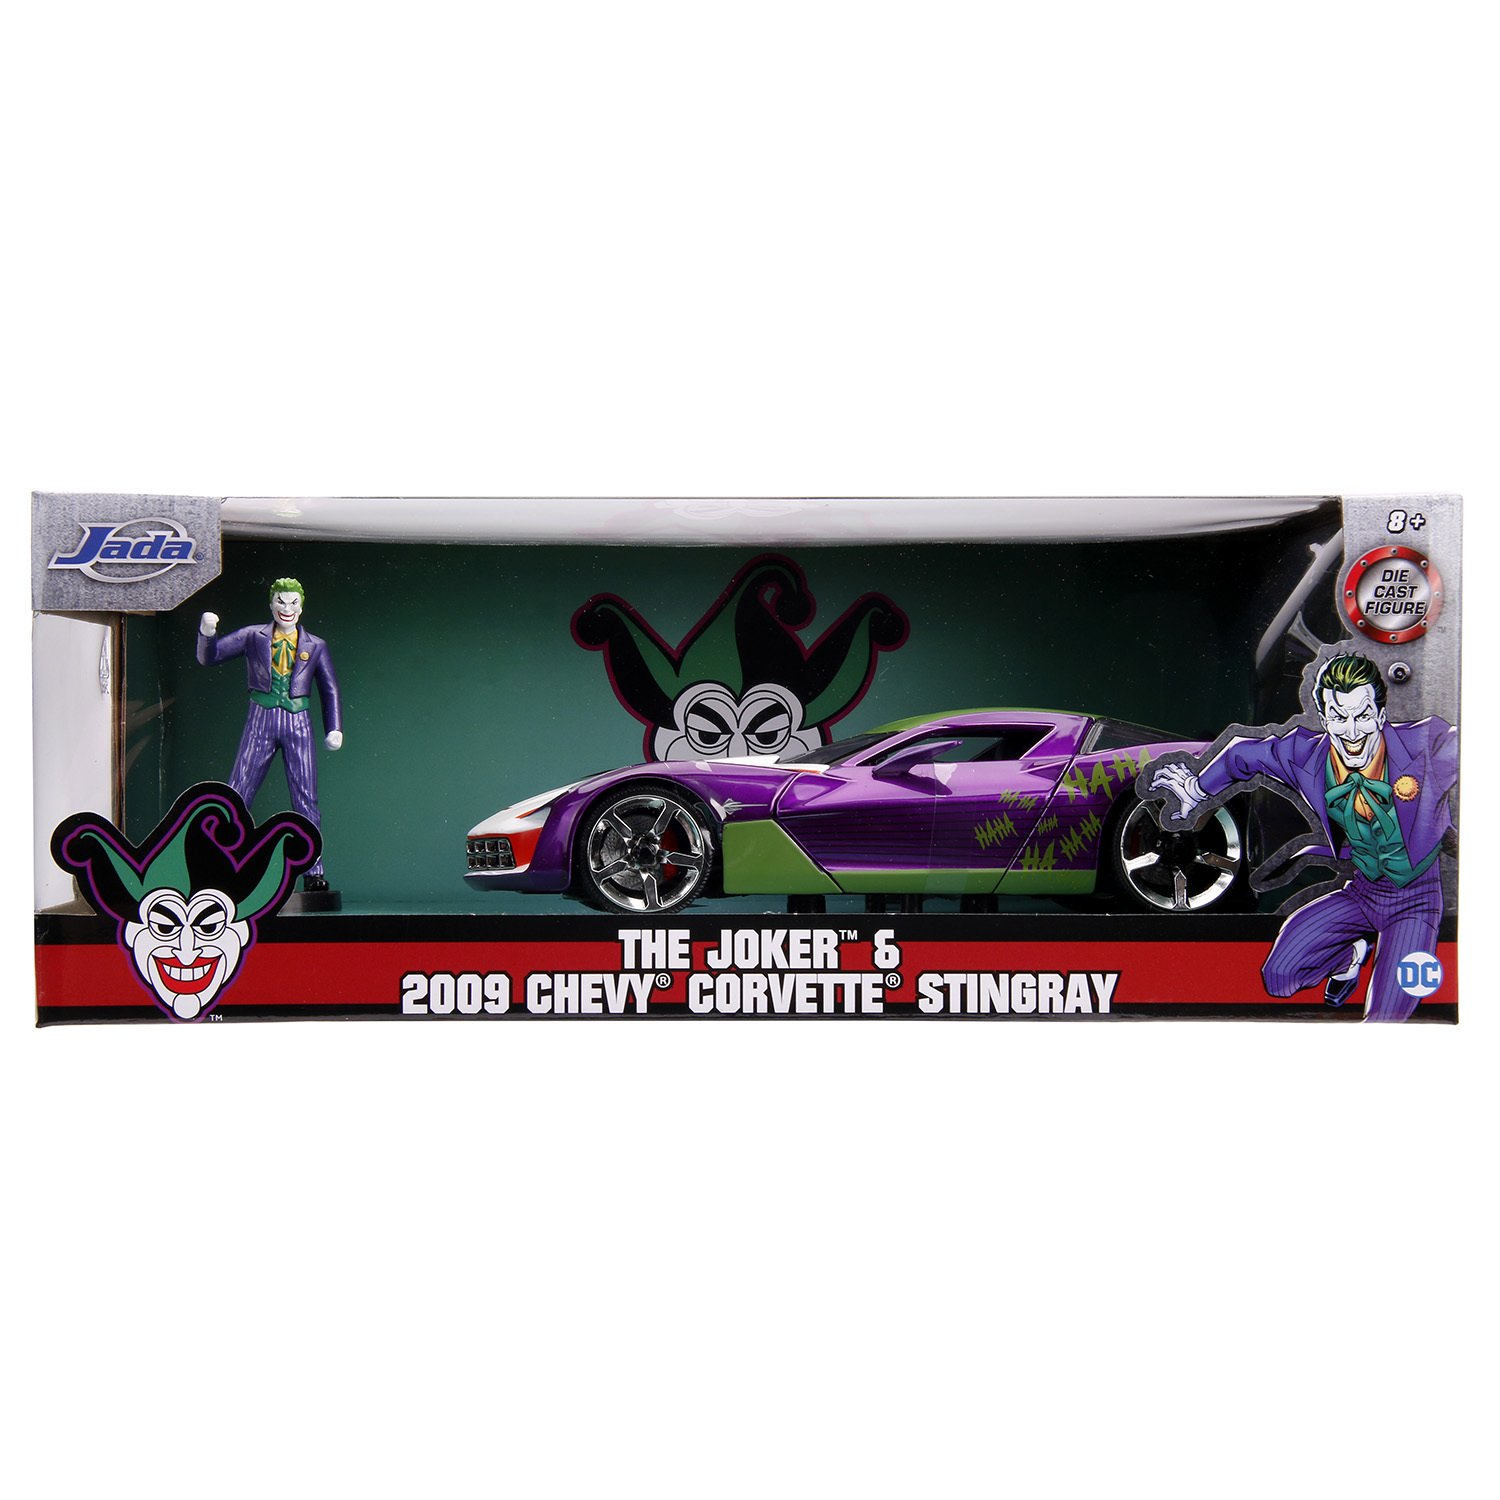 Машина Jada 1:24 Голливудские тачки Chevy Corvette Stingray Concept 2009 +фигурка Джокера 31199 31199 - фото 2